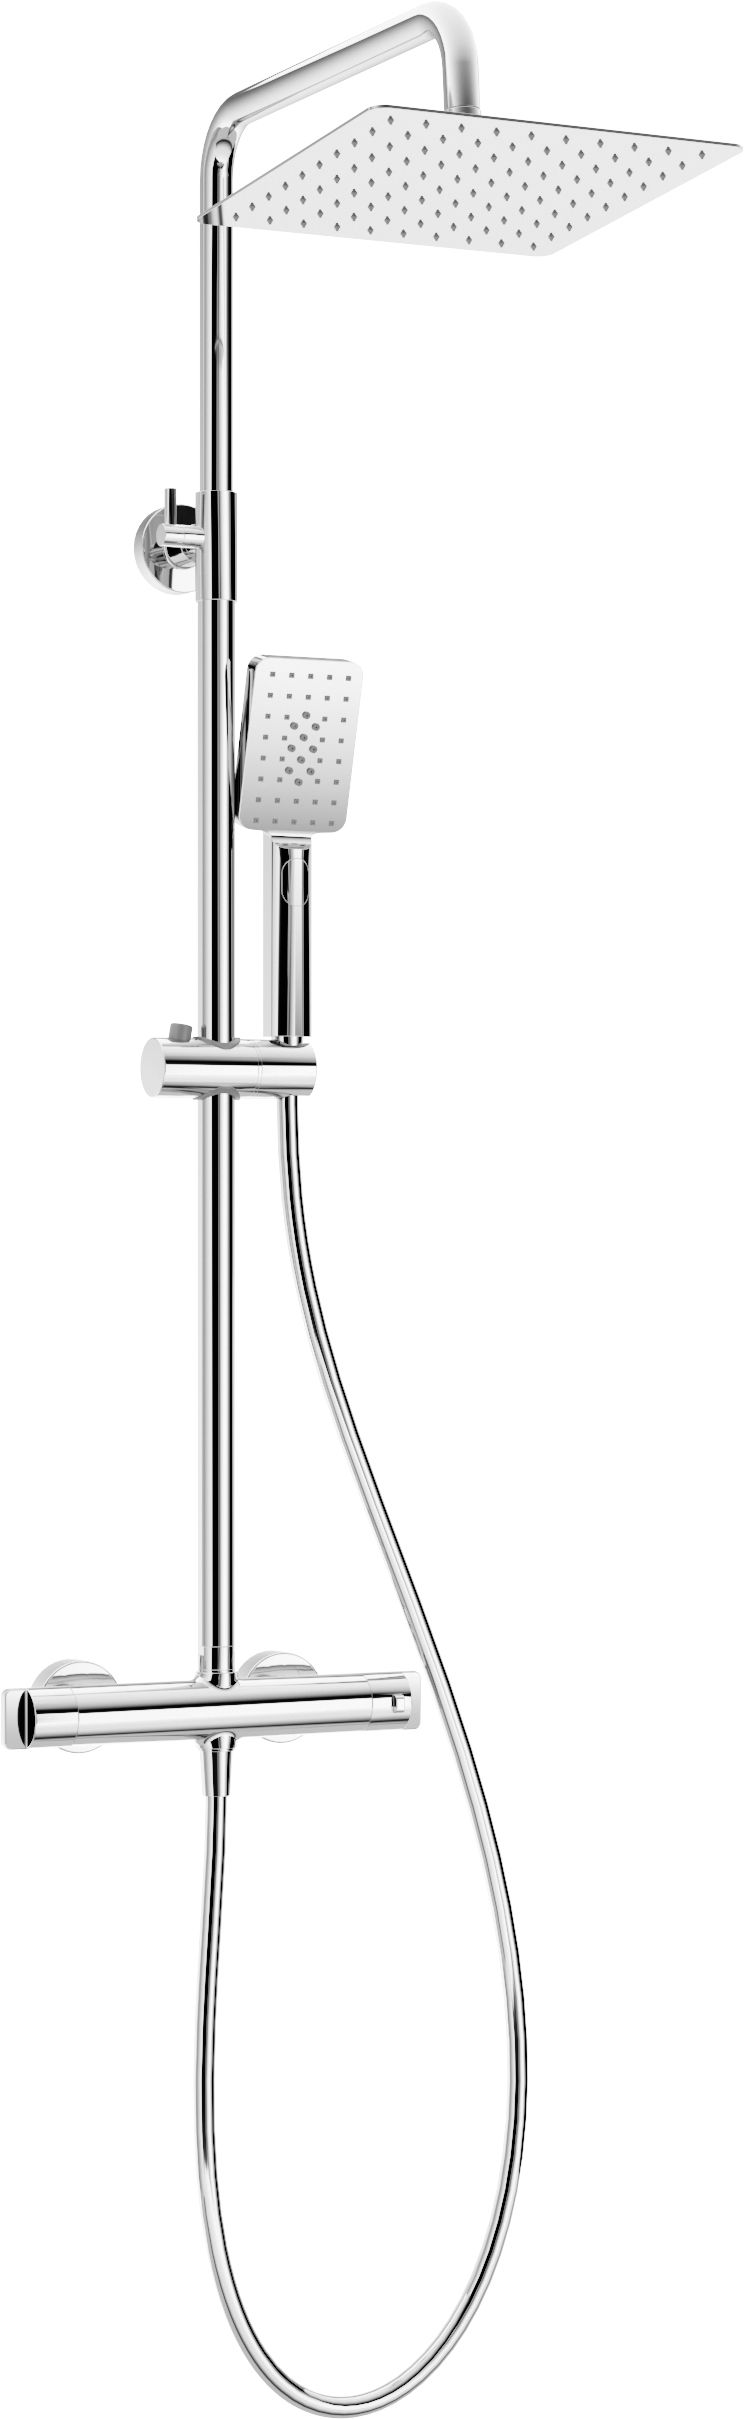 Deszczownica z baterią prysznicową termostatyczną - NAC_04HT - Główne zdjęcie produktowe